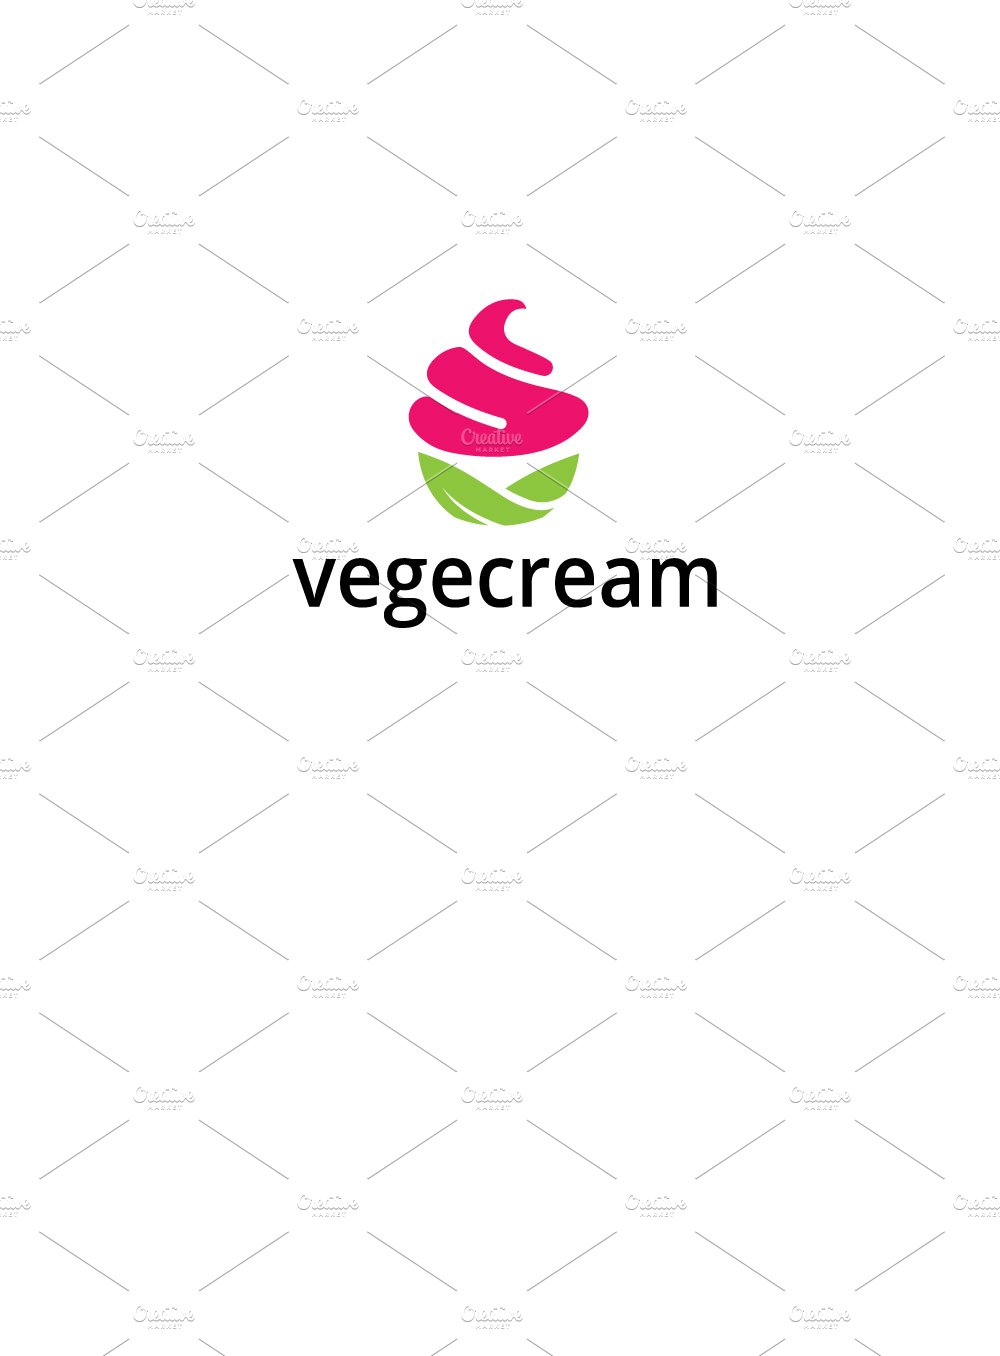 vegan ice cream logo cover image.